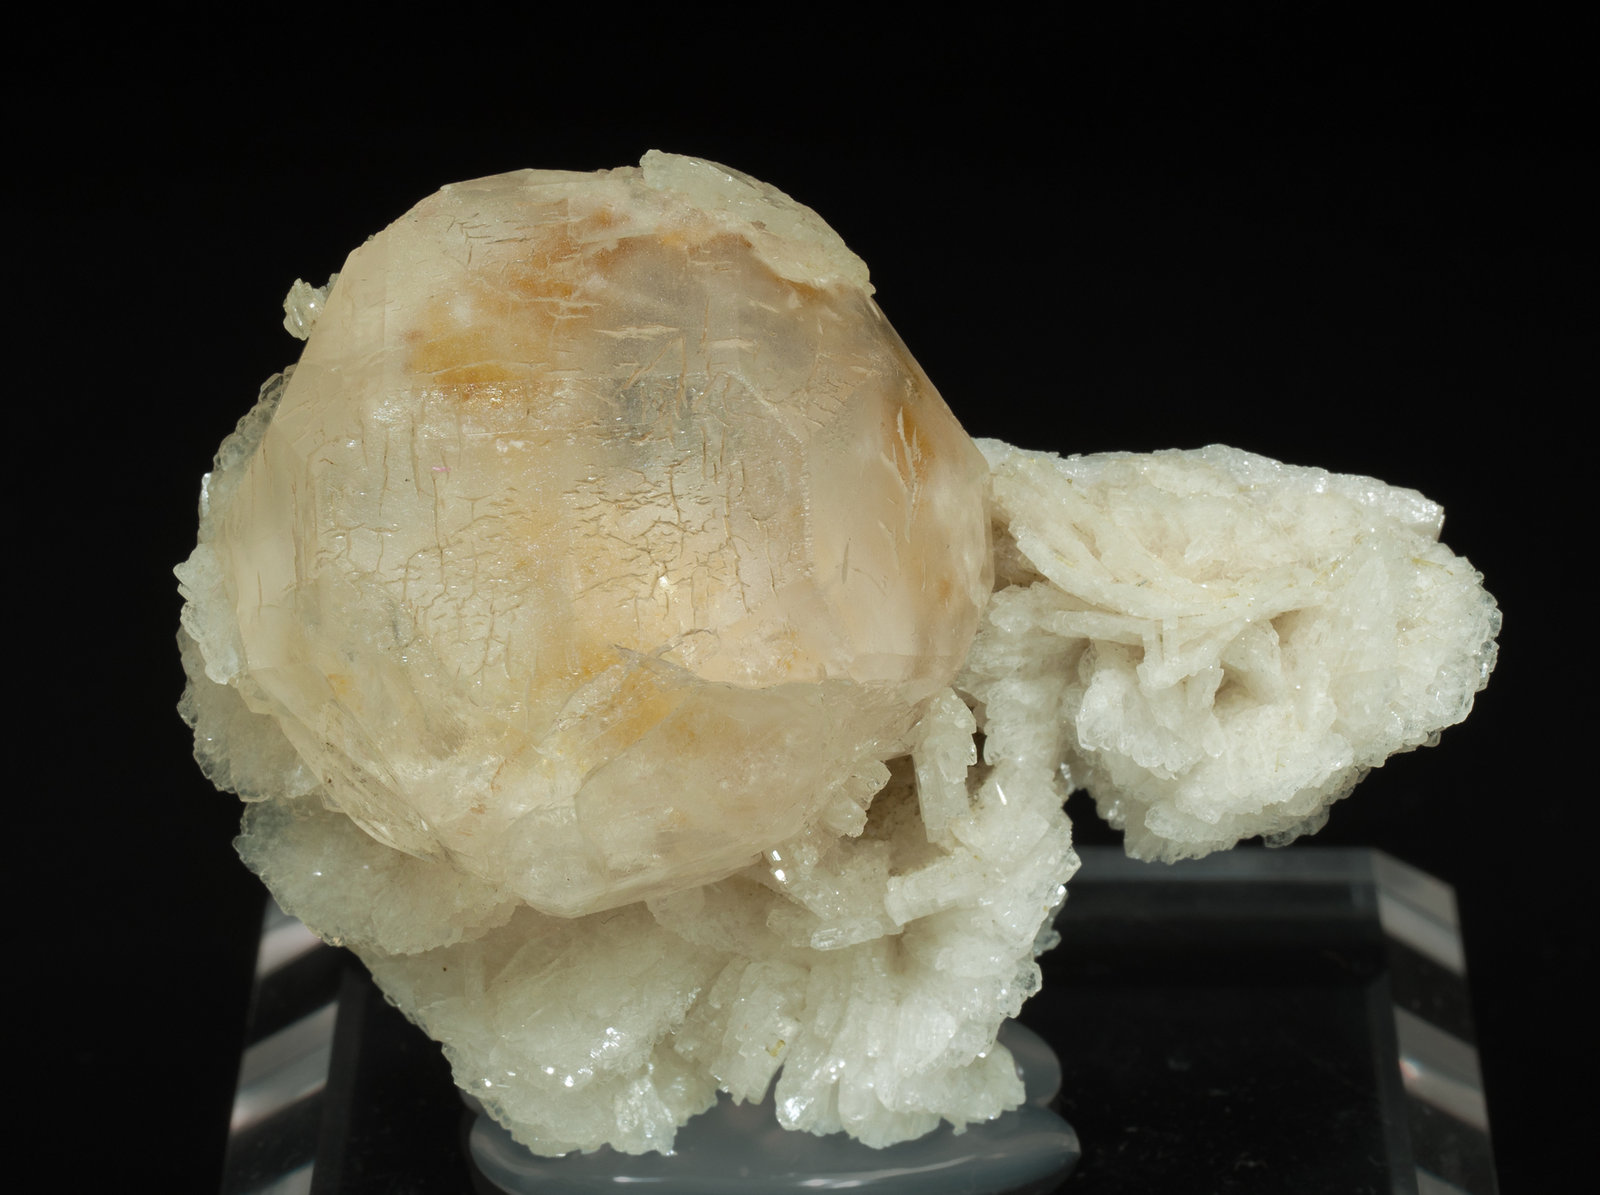 specimens/s_imagesY6/Pollucite-EZ92Y6f.jpg